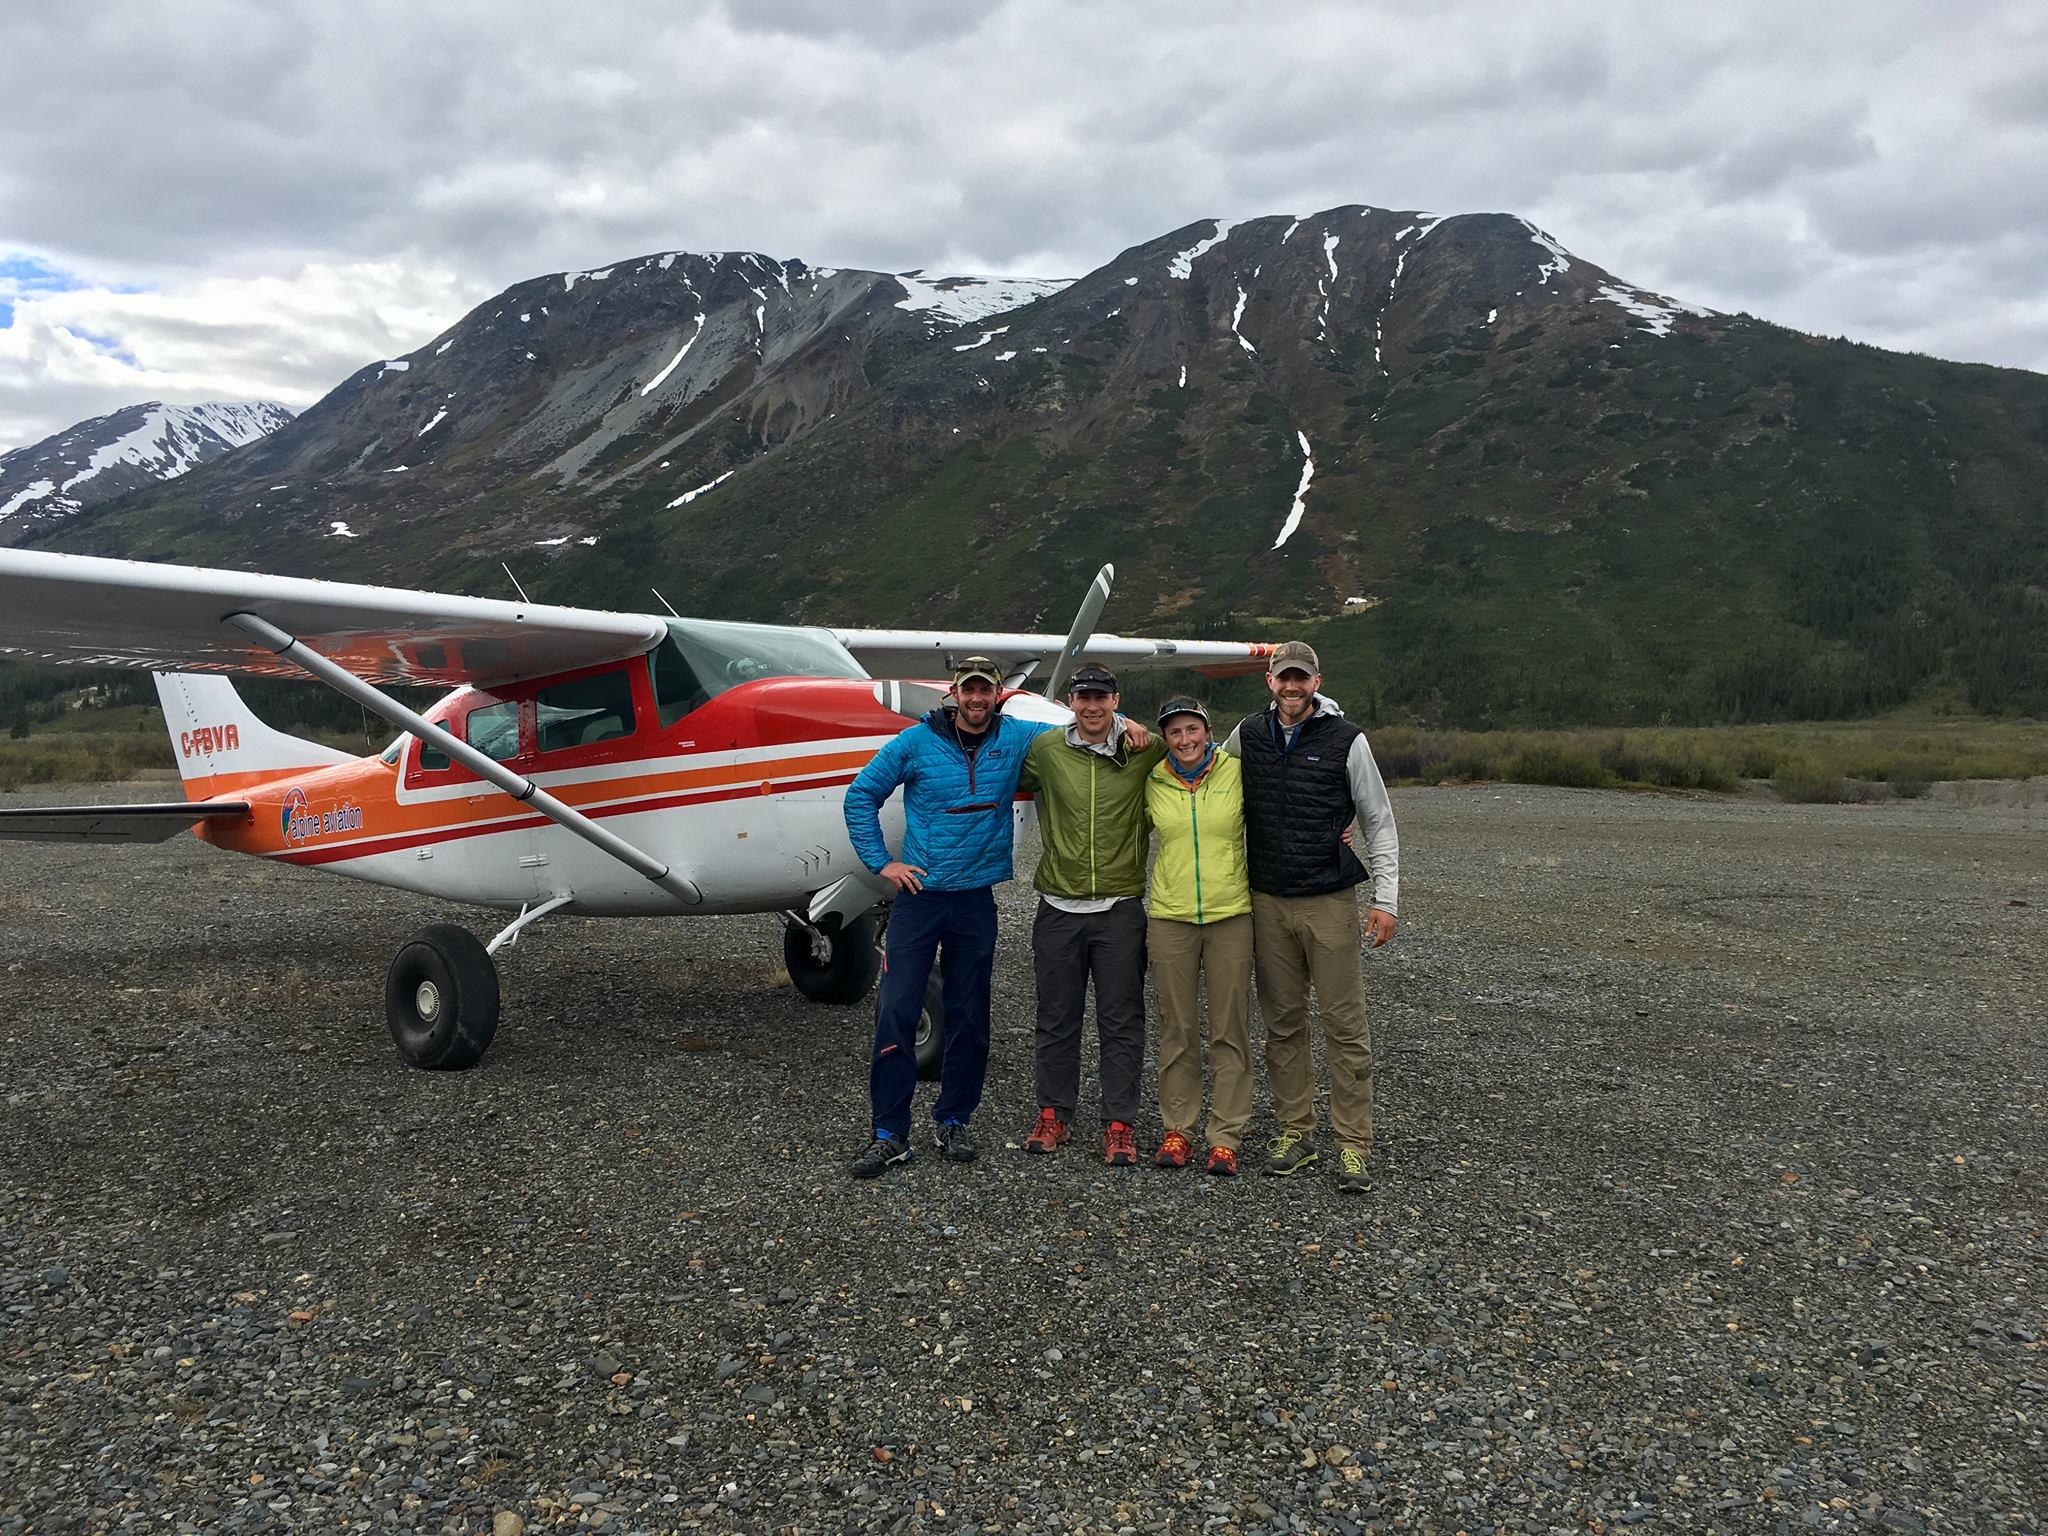 The team at Macmillan Pass airstrip